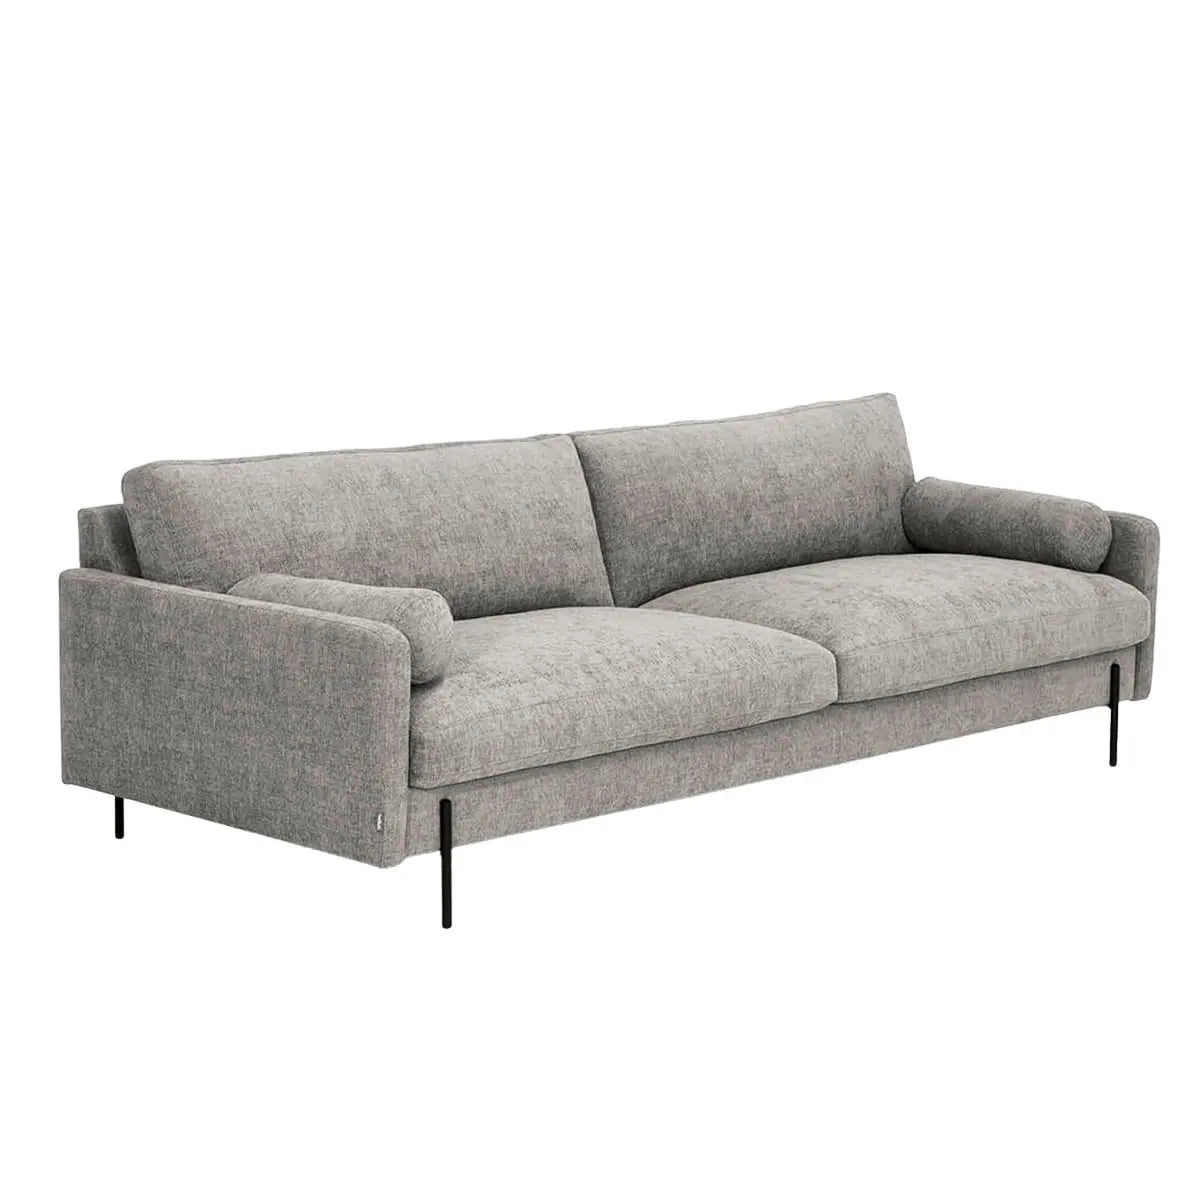 Firenze 3h-sohva 227 cm dutti